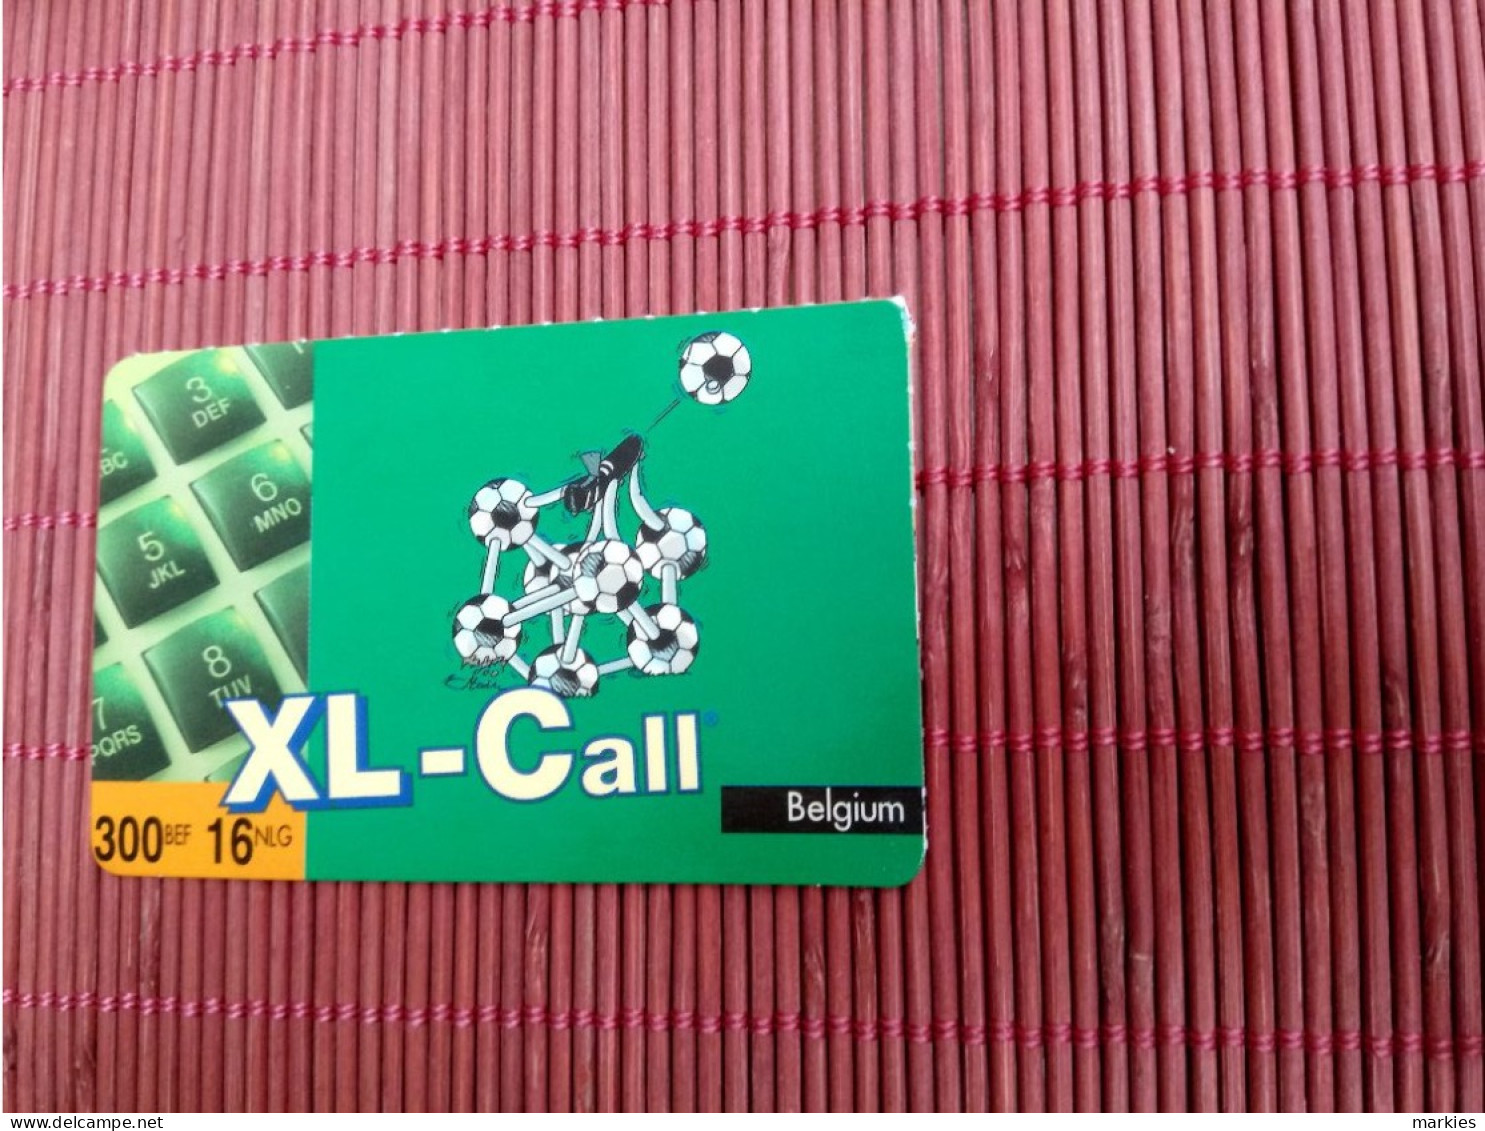 XL Call Prepaidcard 300 BEF Mint 2 PhotosRare - Cartes GSM, Recharges & Prépayées